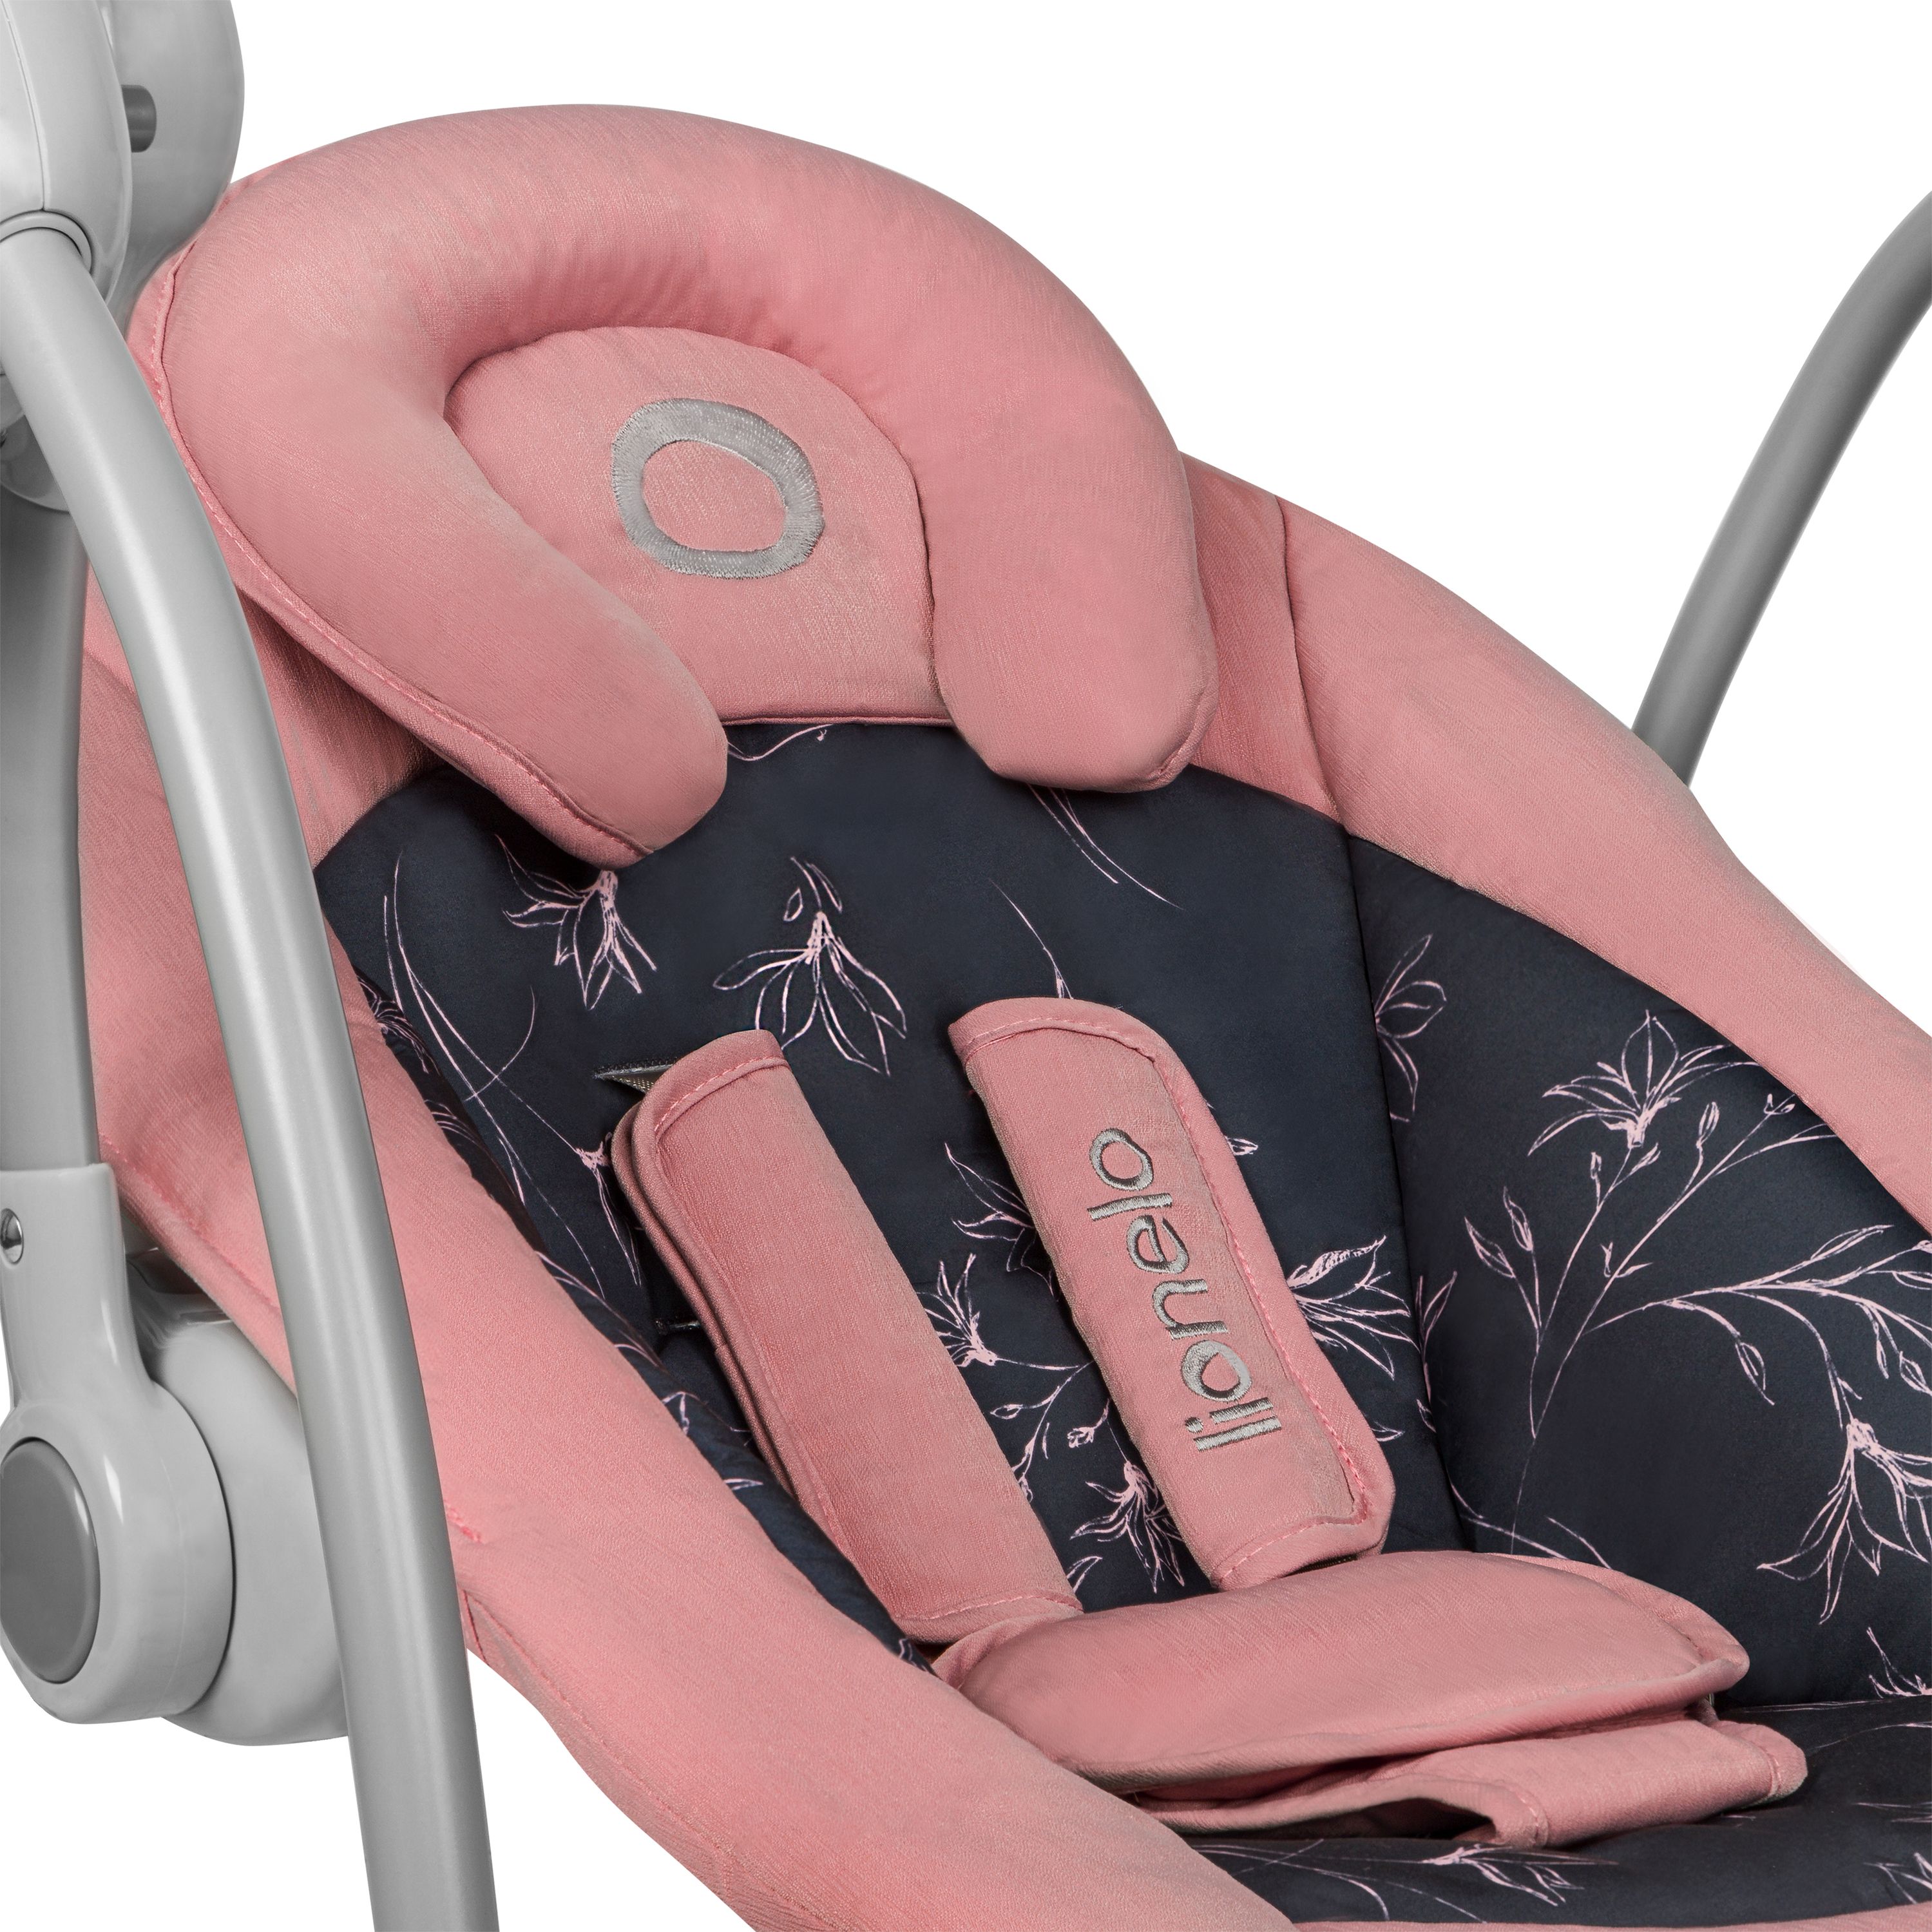 Кресло-качалка Lionelo Ruben Pink Baby с игровой дугой, розовое (LO-RUBEN RUBEN PINK BABY) - фото 7